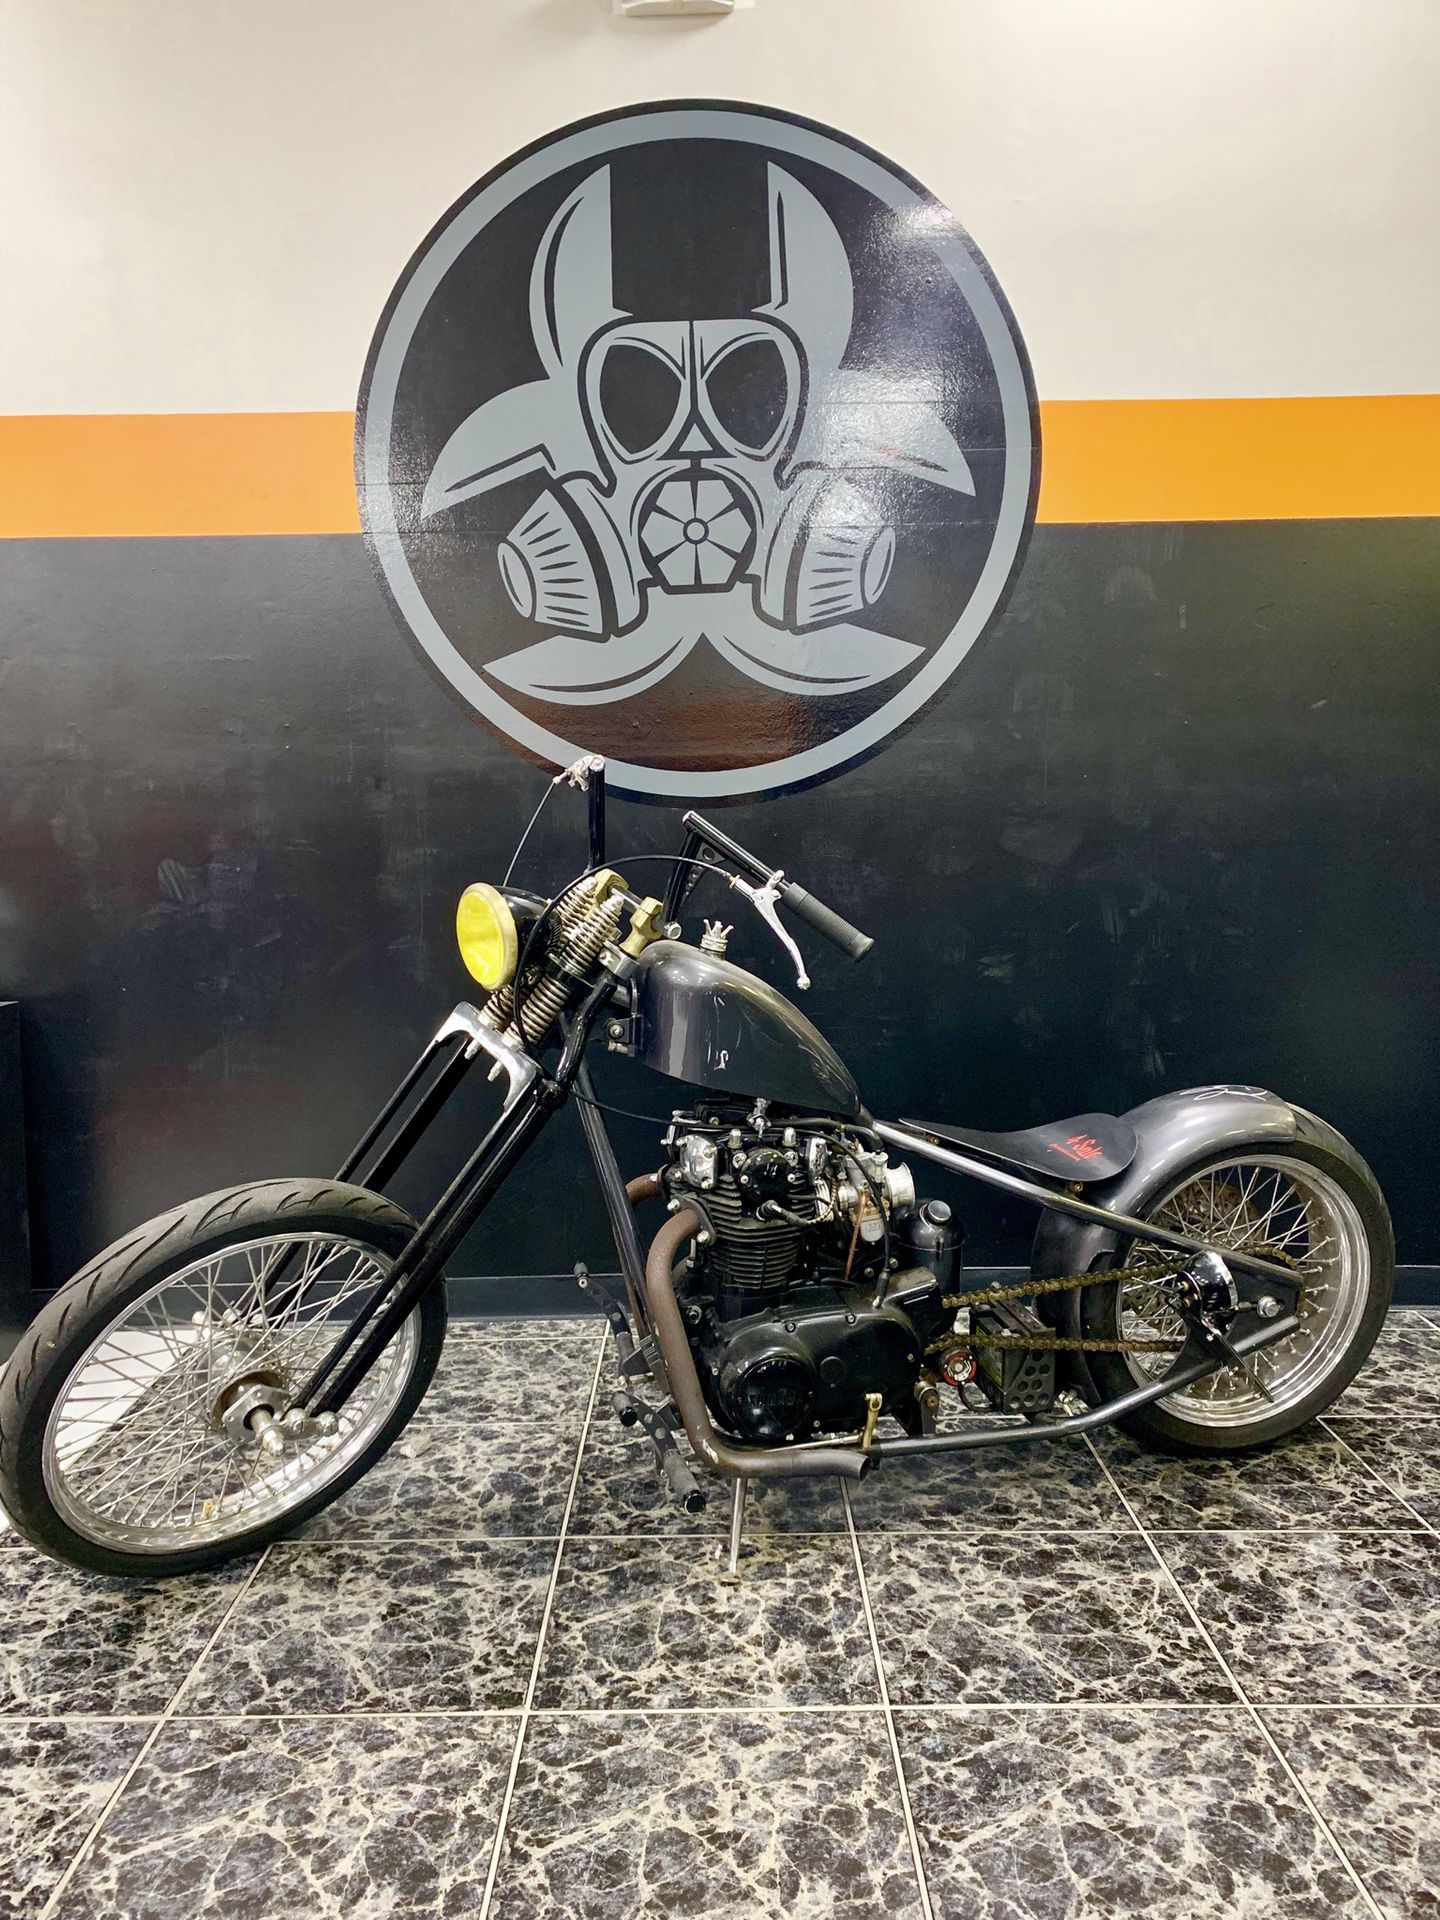 Yamaha bobber motorcycle